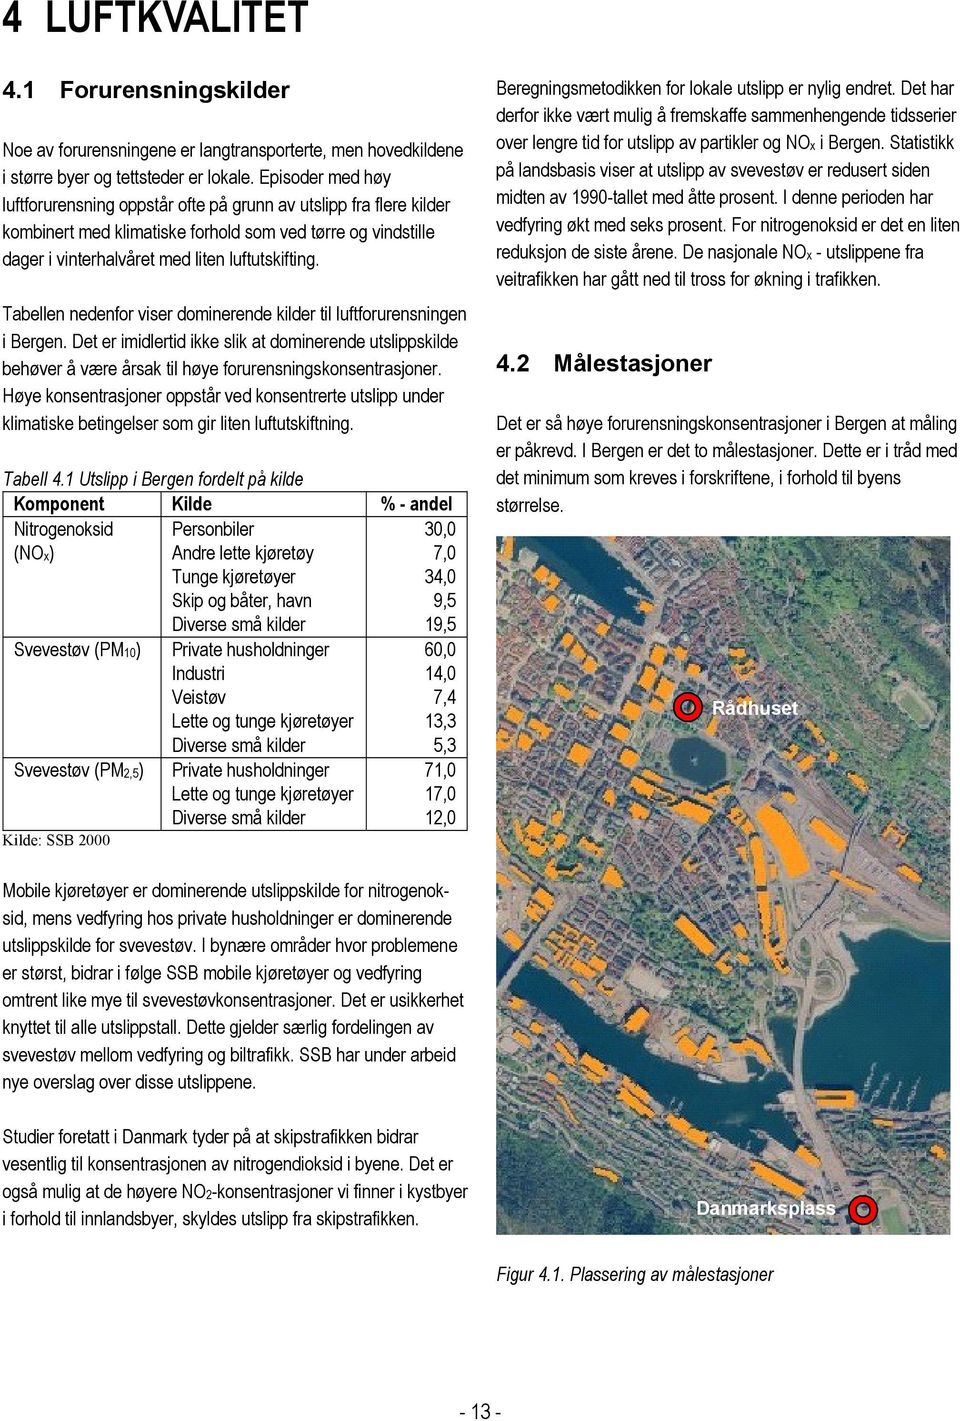 Tabellen nedenfor viser dominerende kilder til luftforurensningen i Bergen. Det er imidlertid ikke slik at dominerende utslippskilde behøver å være årsak til høye forurensningskonsentrasjoner.